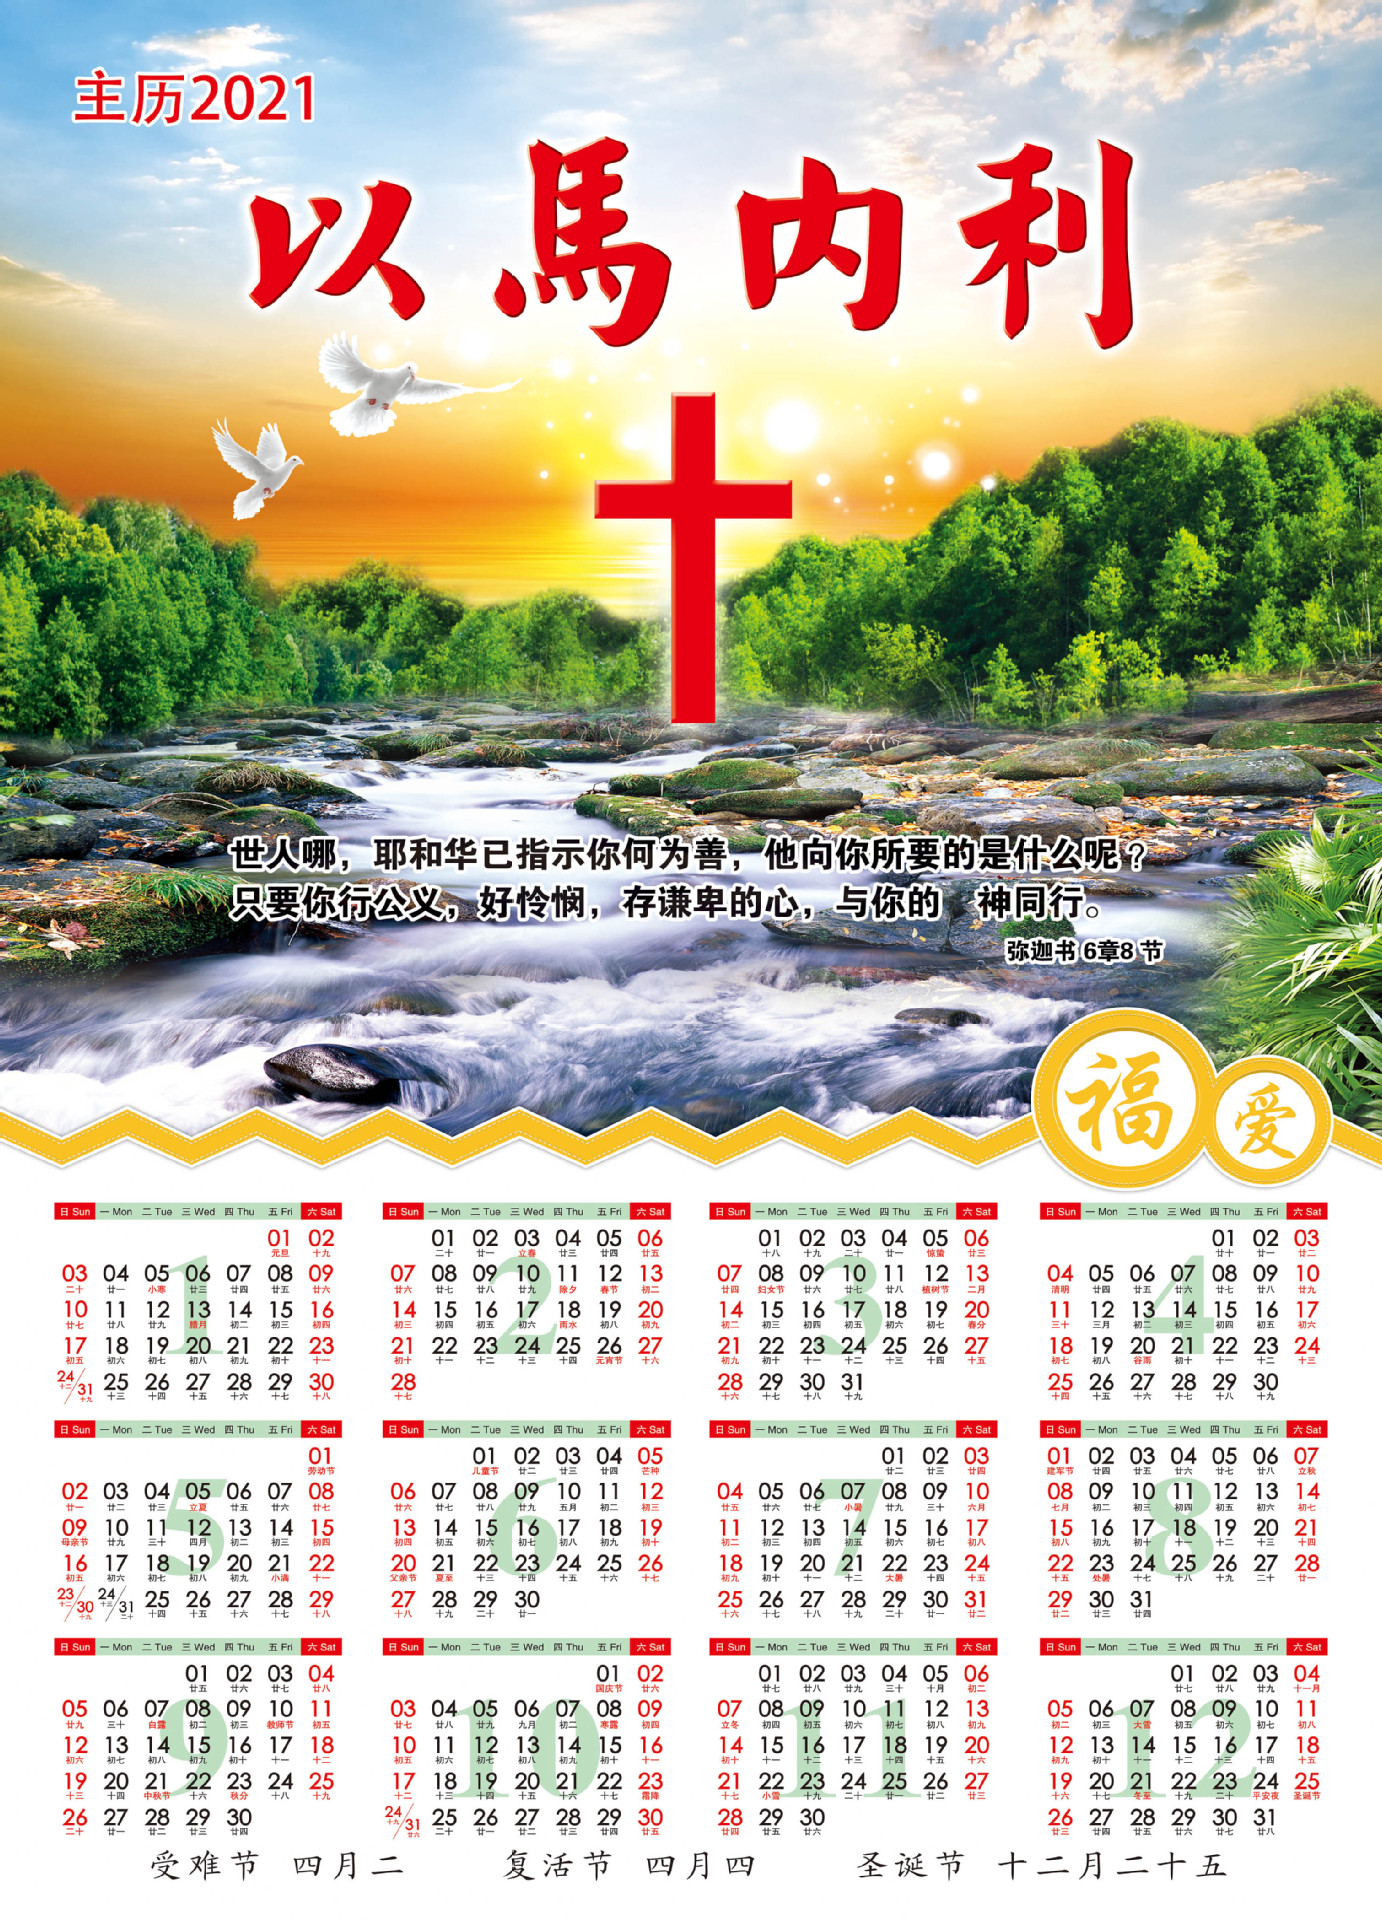 2021年基督教年历单张挂历春联对联新春台历耶稣主日单年历表礼品